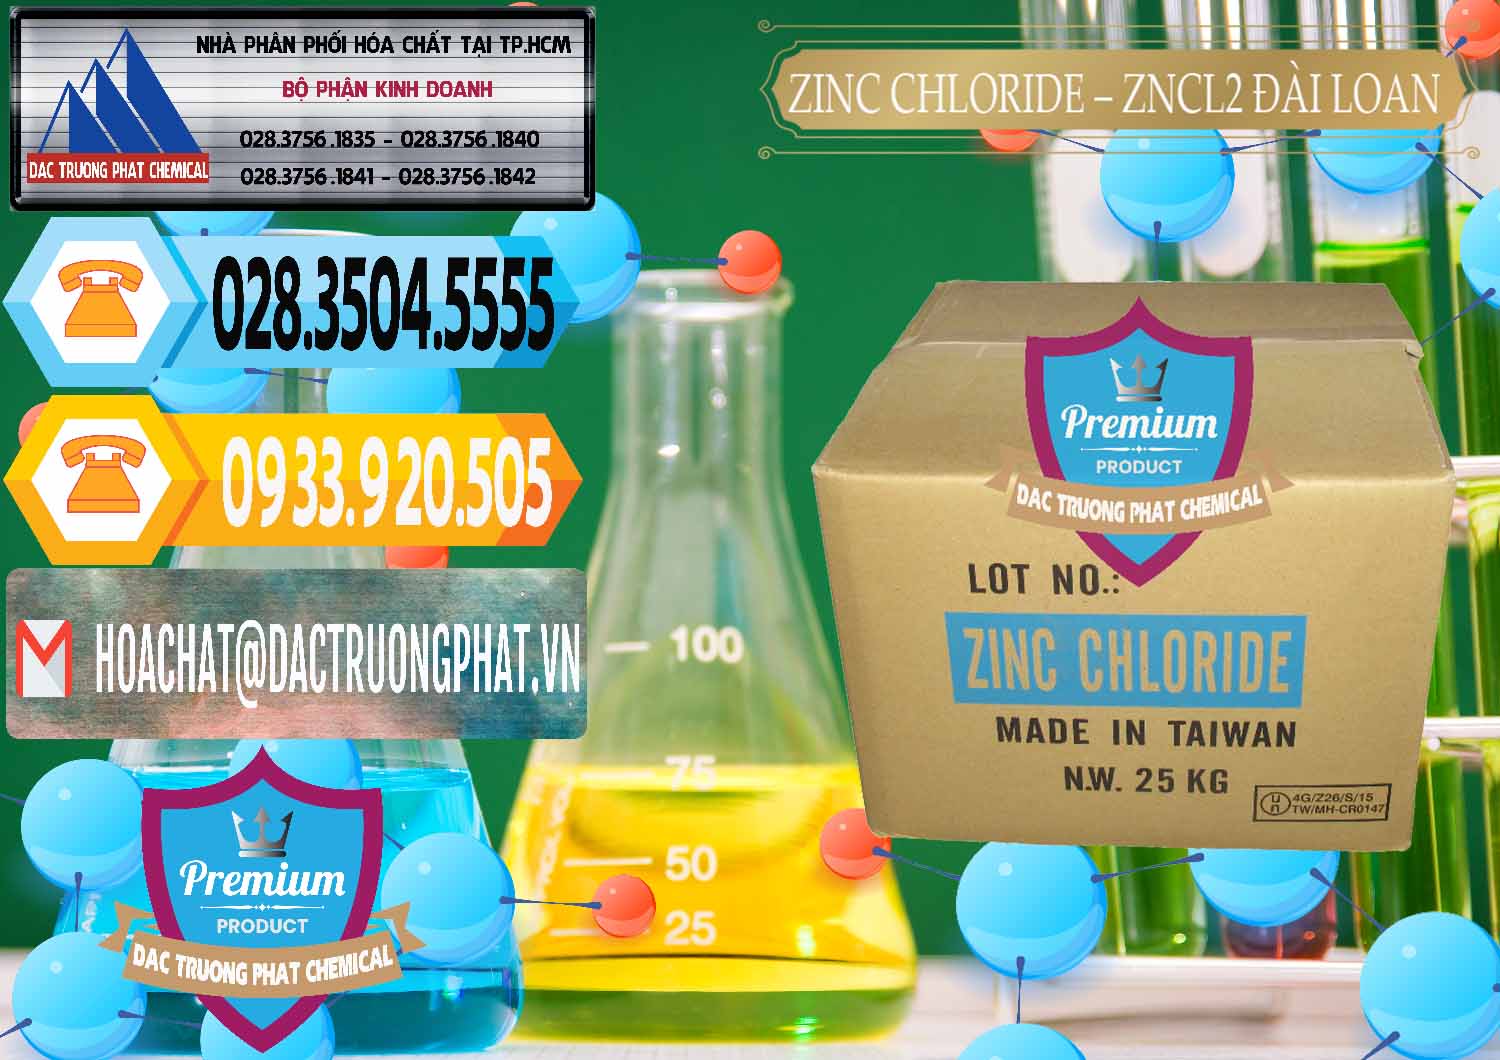 Chuyên bán & cung cấp Zinc Chloride - ZNCL2 96% Đài Loan Taiwan - 0178 - Nhà cung cấp ( phân phối ) hóa chất tại TP.HCM - hoachattayrua.net